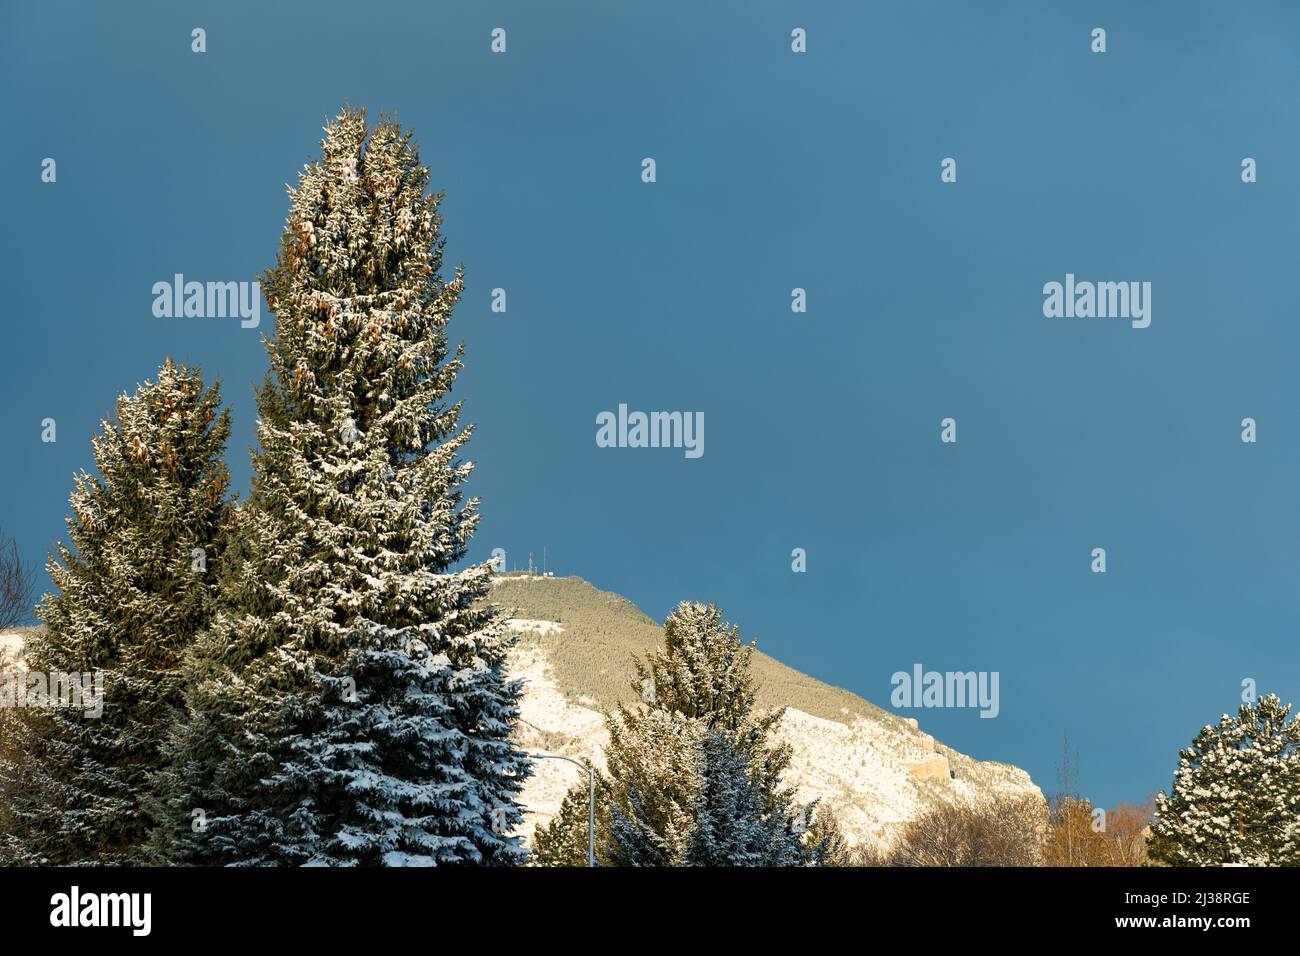 Cedar Mountain und Pinien mit Schnee vor dem Hintergrund des blauen Himmels für Ihre SMS. Die Lage ist Cody, Wyoming, mit Kommunikationstürmen. Stockfoto